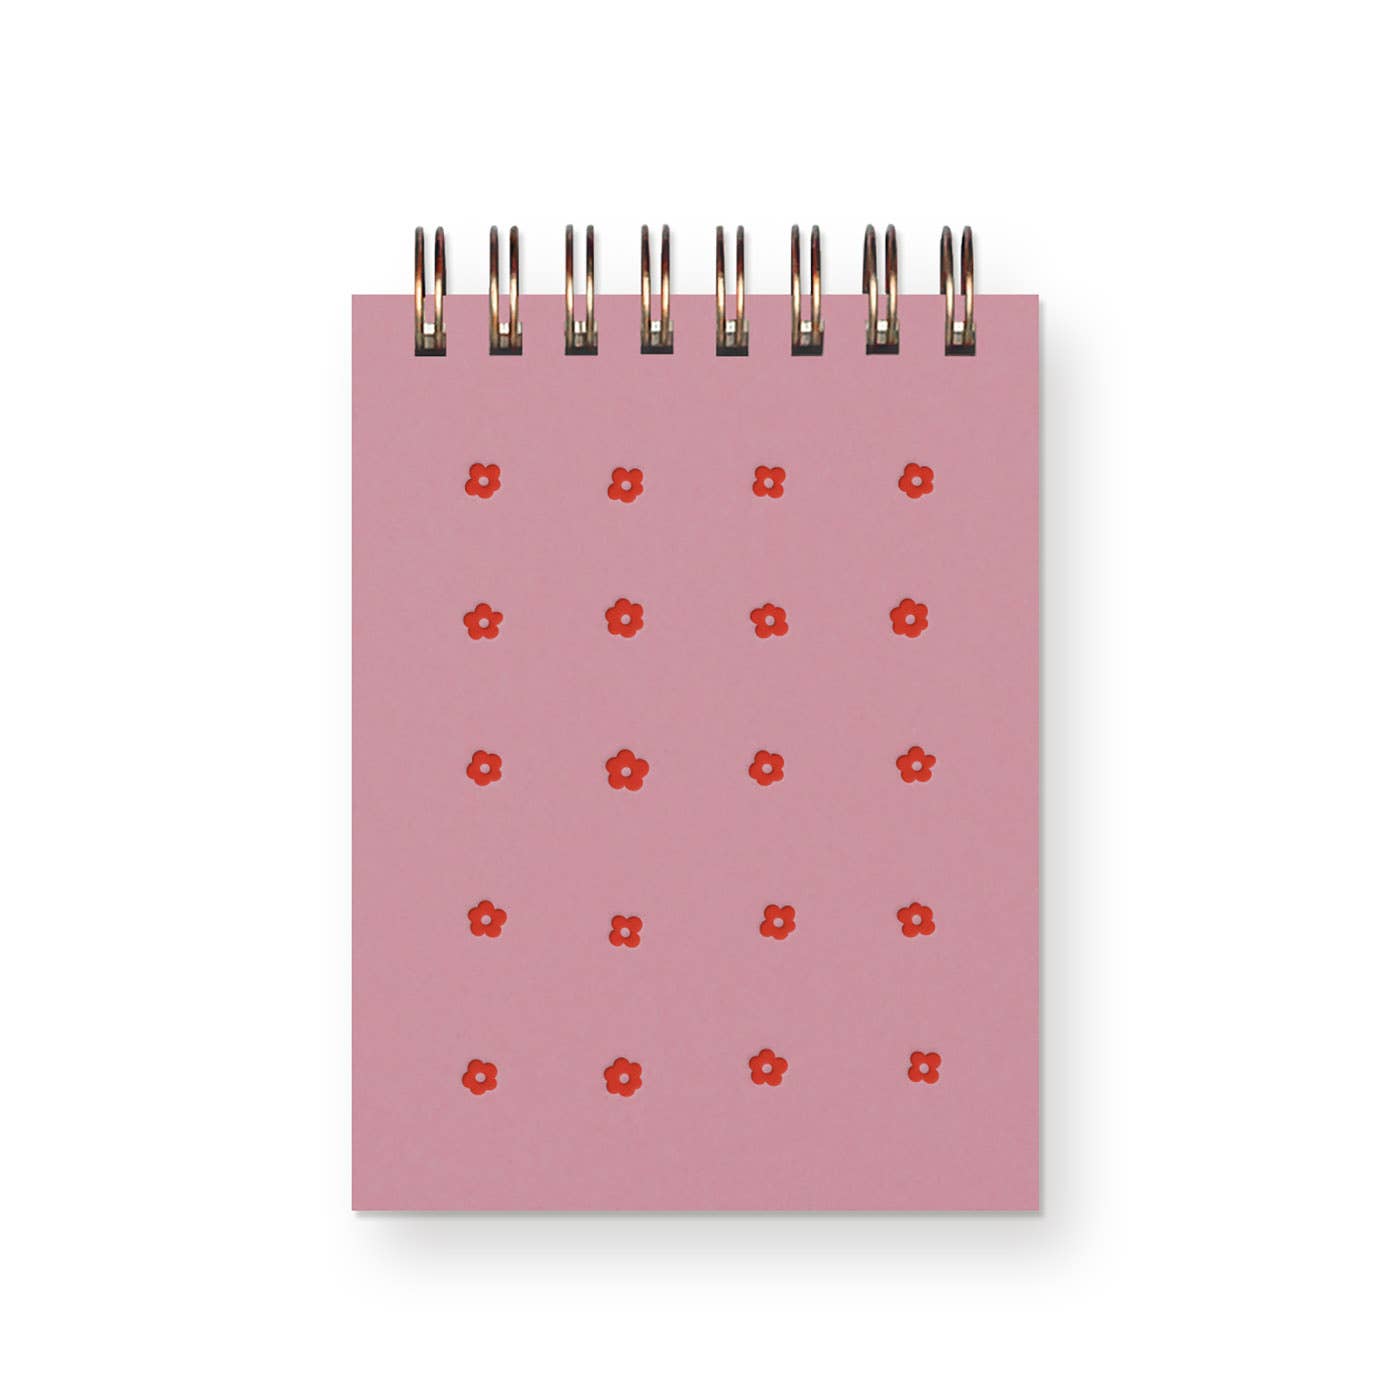 Ruff House Print Shop - Flower Grid Mini Jotter Notebook